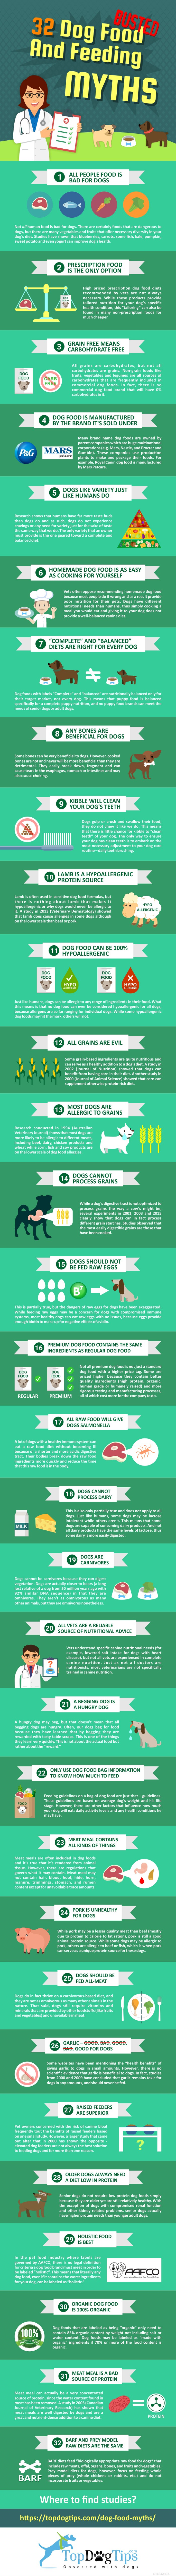 31 vyvrácených mýtů o krmení a krmení psů [Infographic]